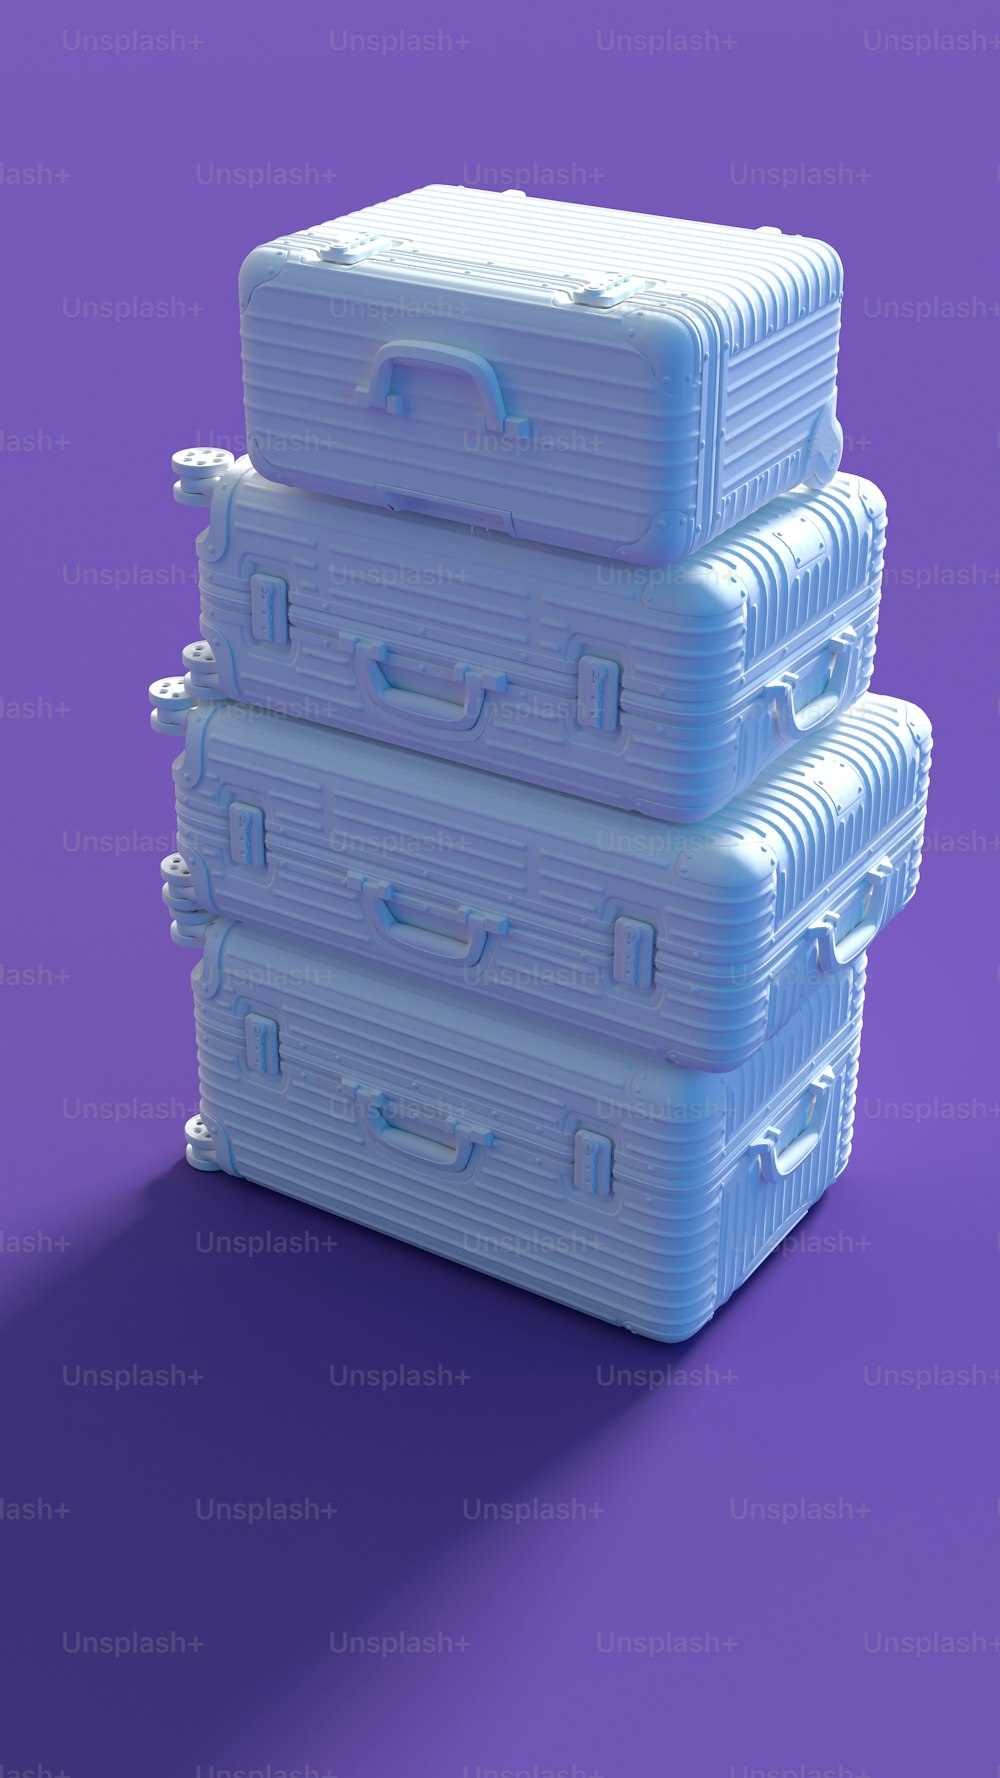 Ein Stapel von drei Plastikkisten, die auf einer violetten Oberfläche sitzen